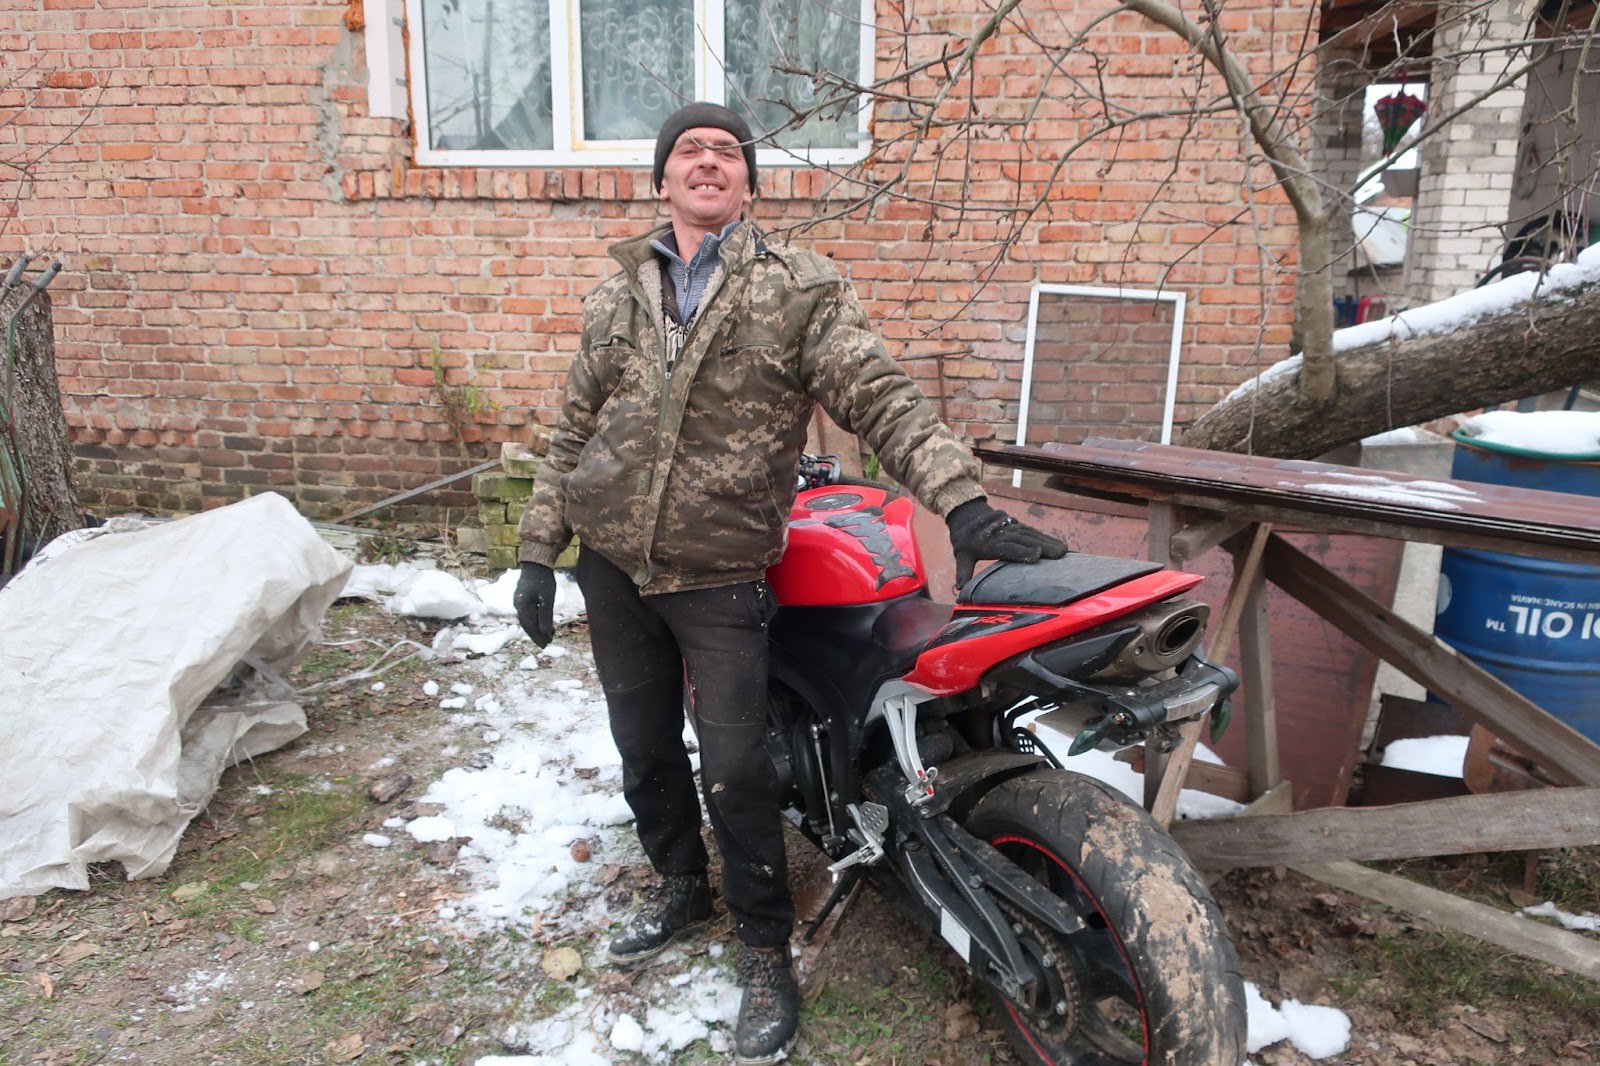 Юрій Телень біля мотоцикла одного з оборонців, який вони зберігають у своєму дворі. Фото авторки